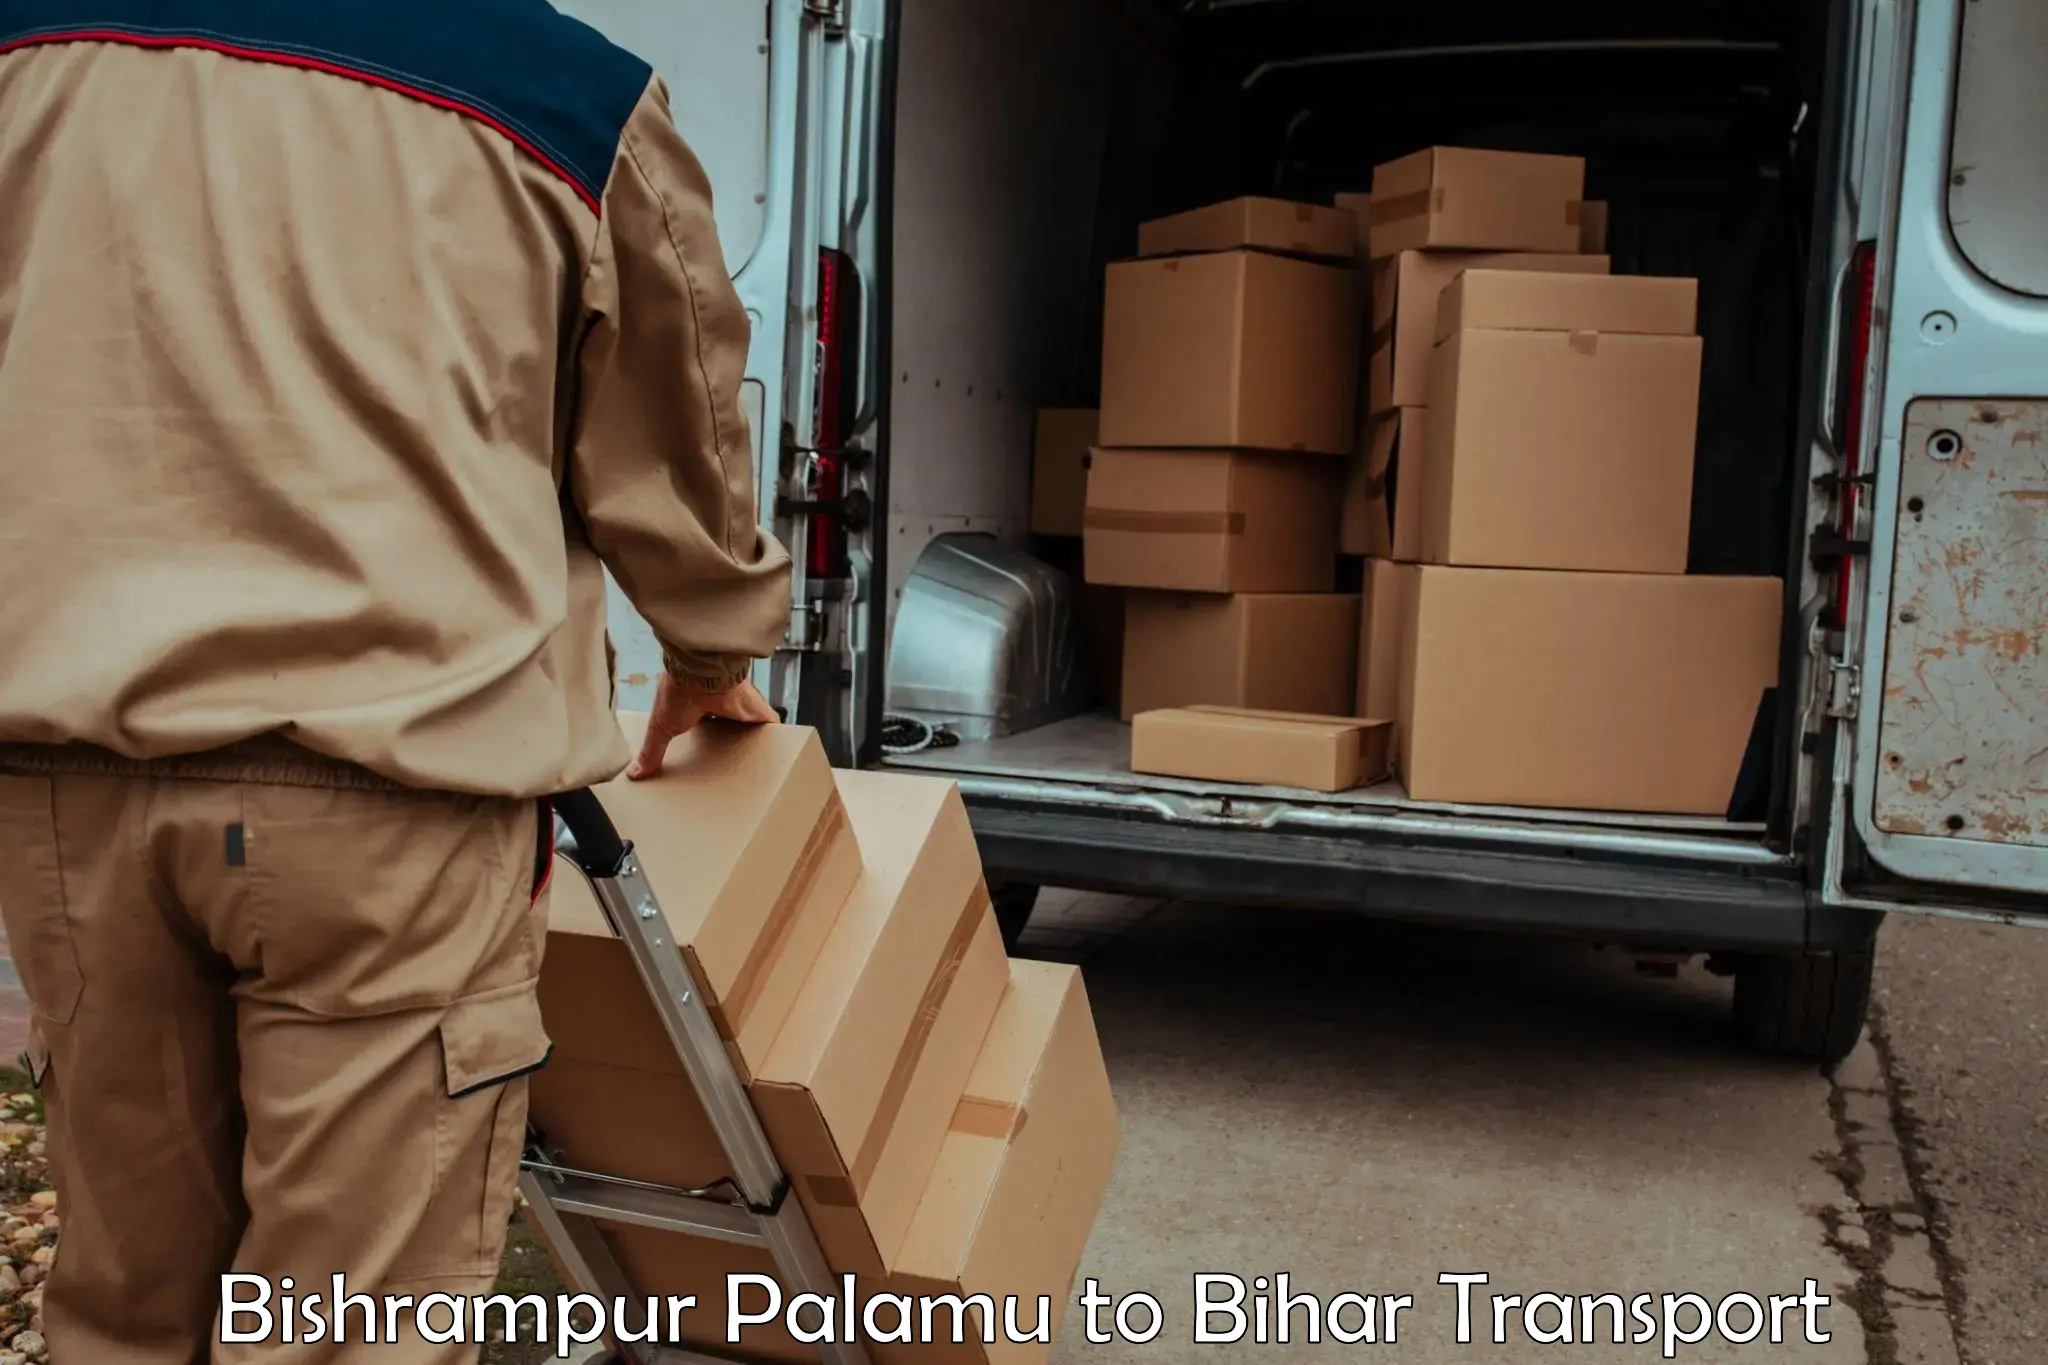 Air cargo transport services Bishrampur Palamu to Dumraon